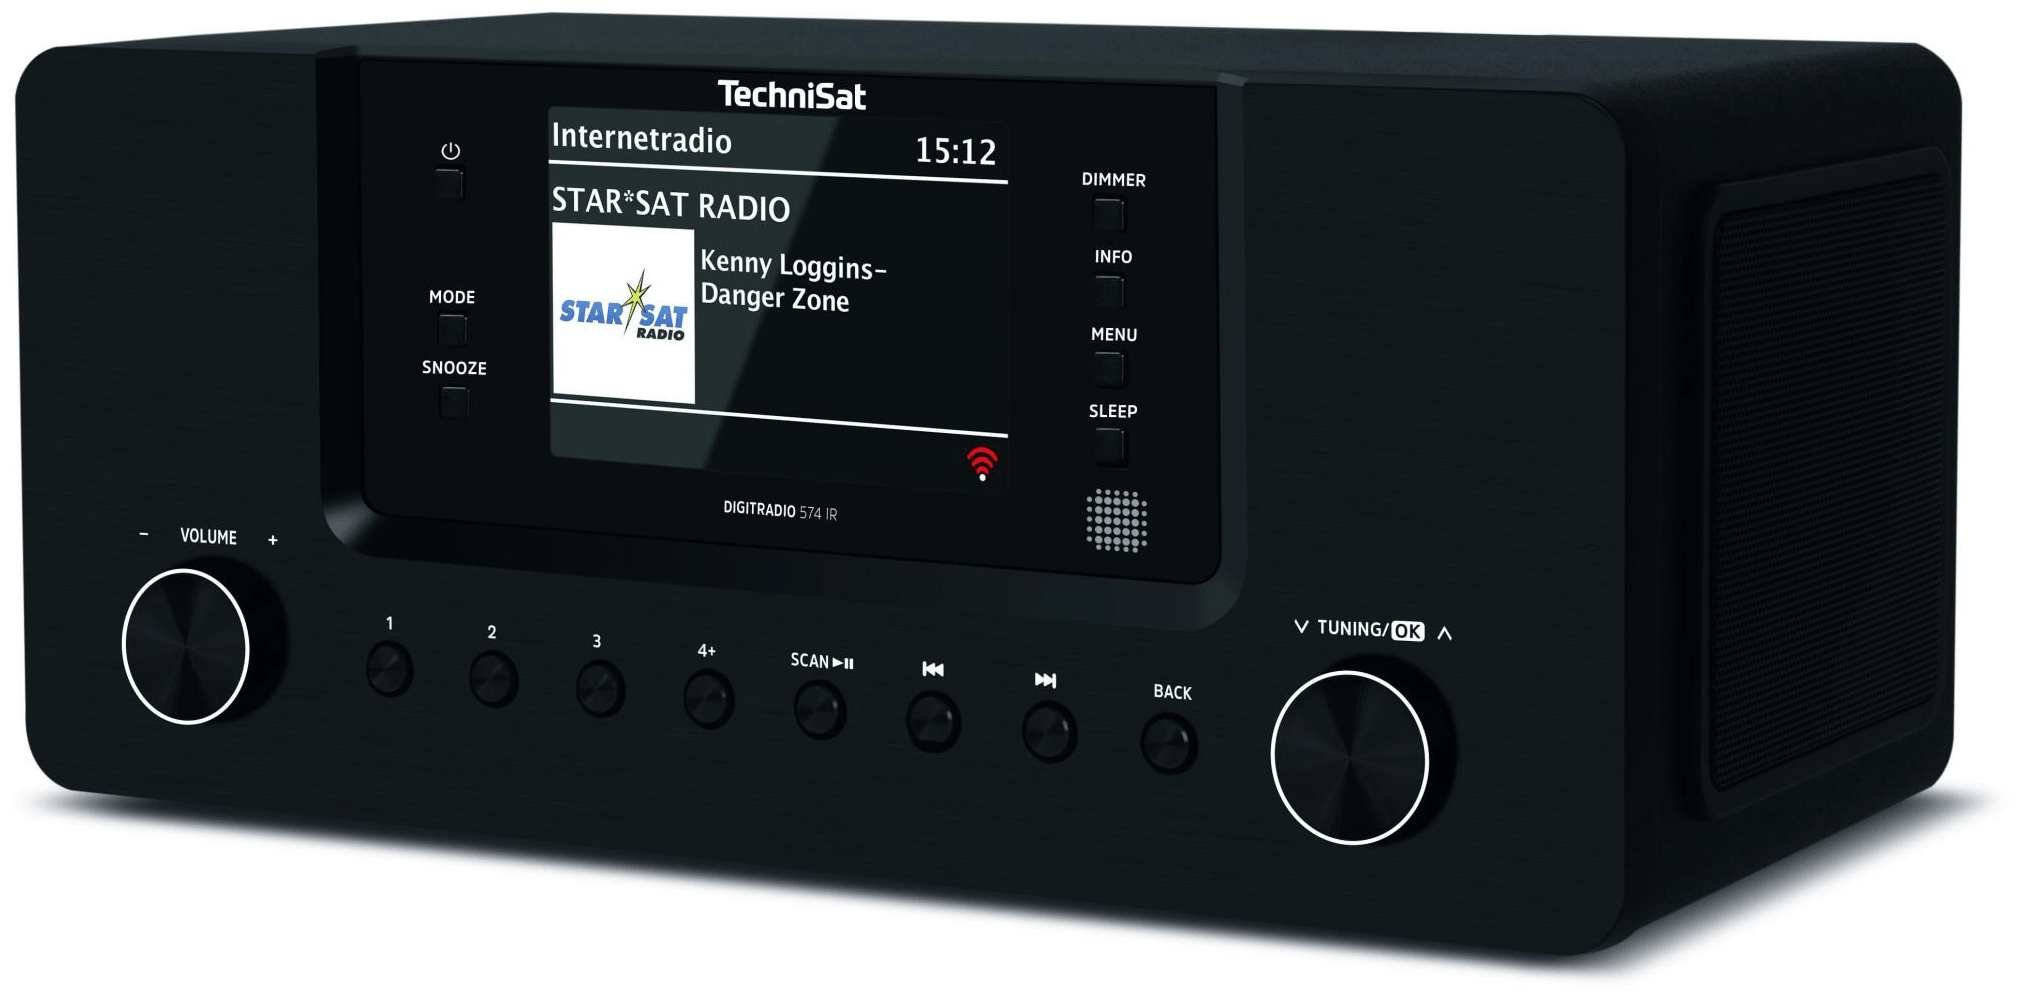 TechniSat DigitRadio 574 IR Bluetooth DAB+, FM Tragbar Radio (Schwarz) von  expert Technomarkt